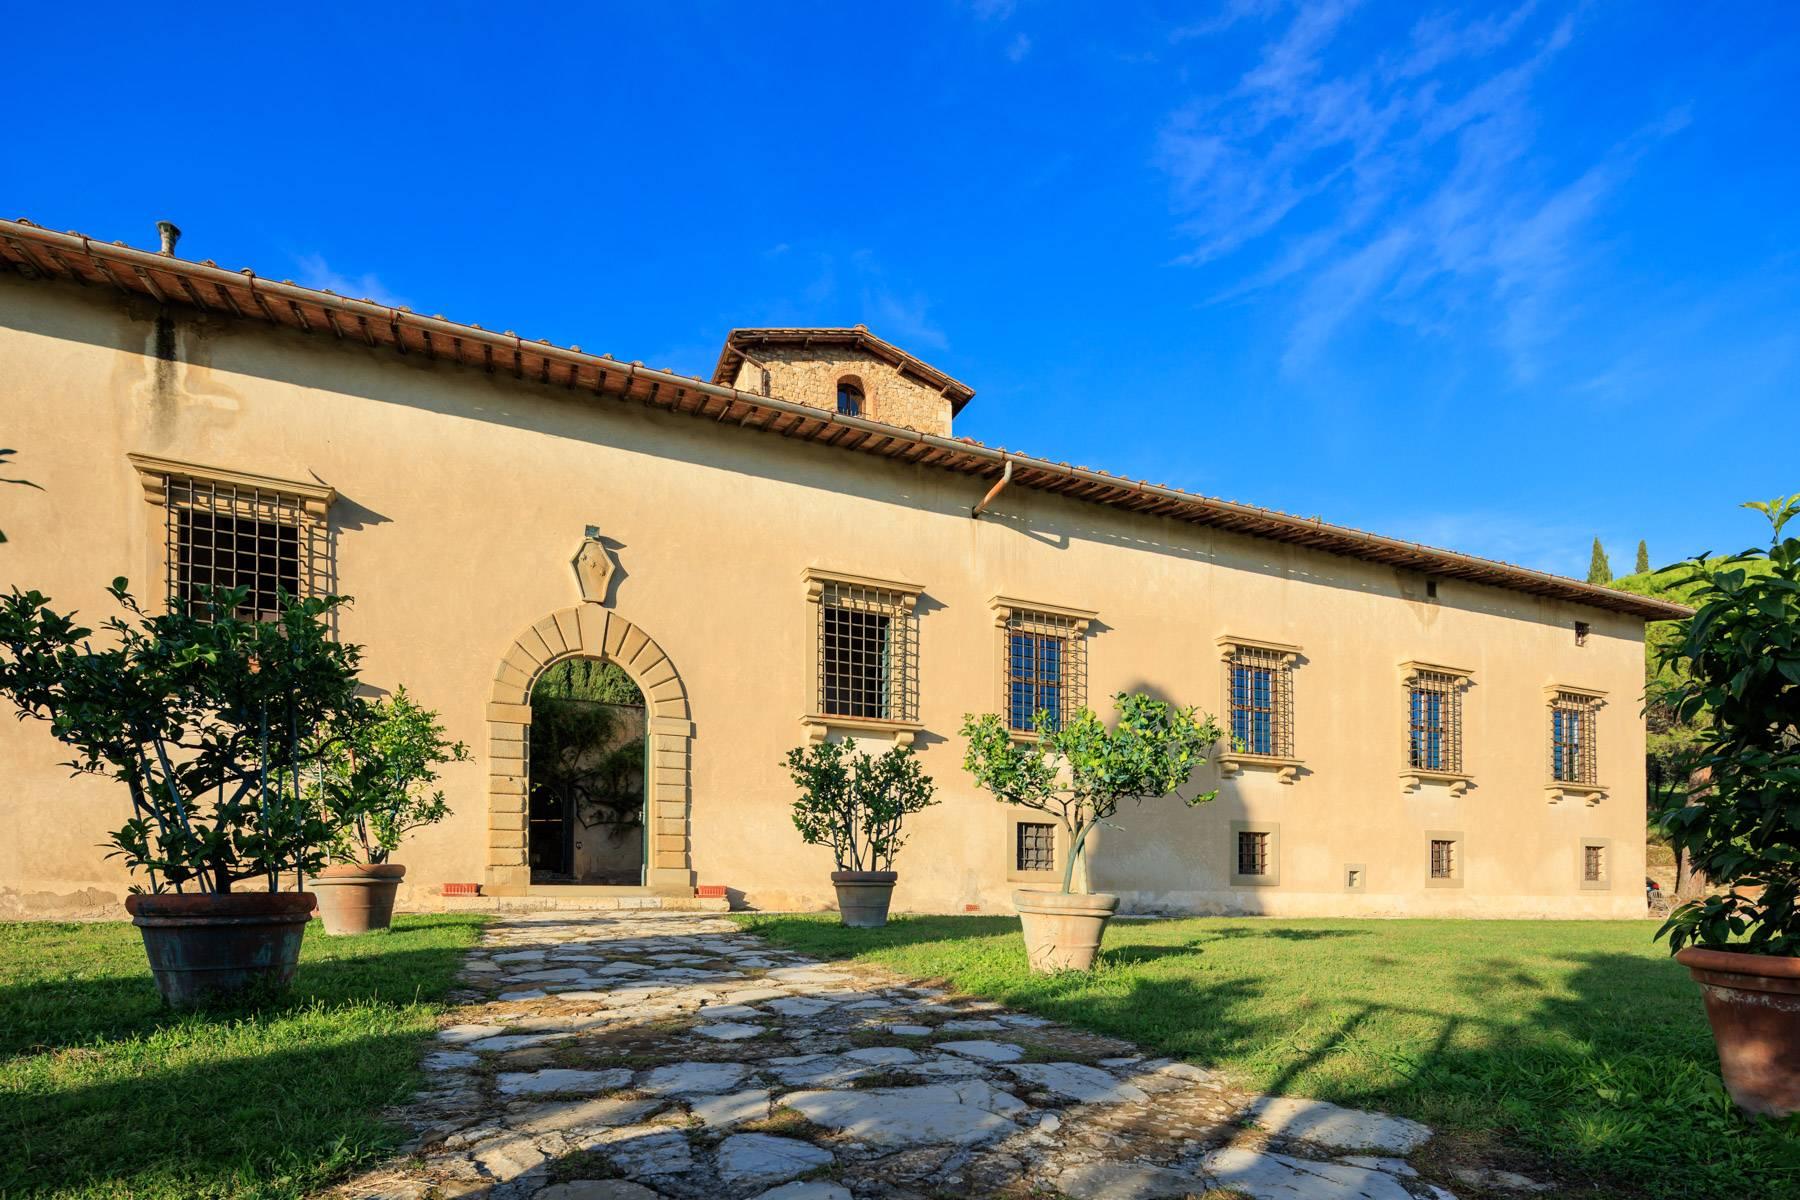 Grande villa padronale d'epoca nella più rinomata zona olearia vicino a Firenze - 3